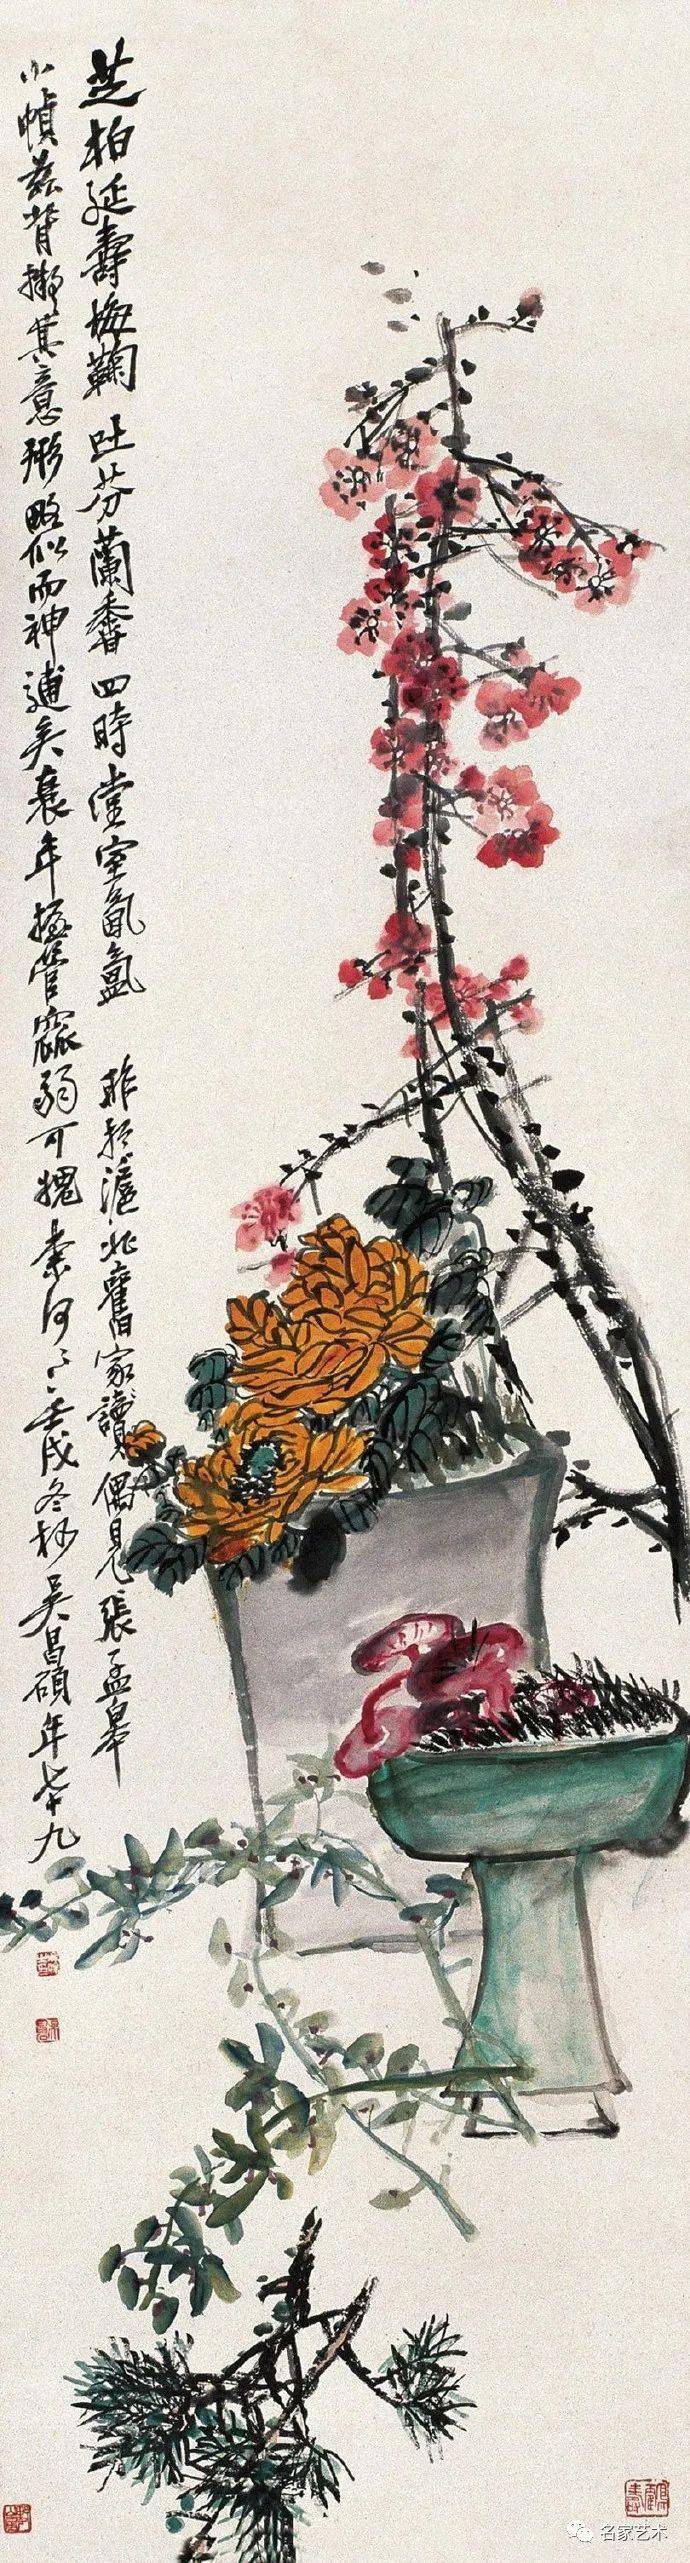 号称近代海派画坛艺首的吴昌硕,作为文人画家,几乎每年都画"岁朝清供